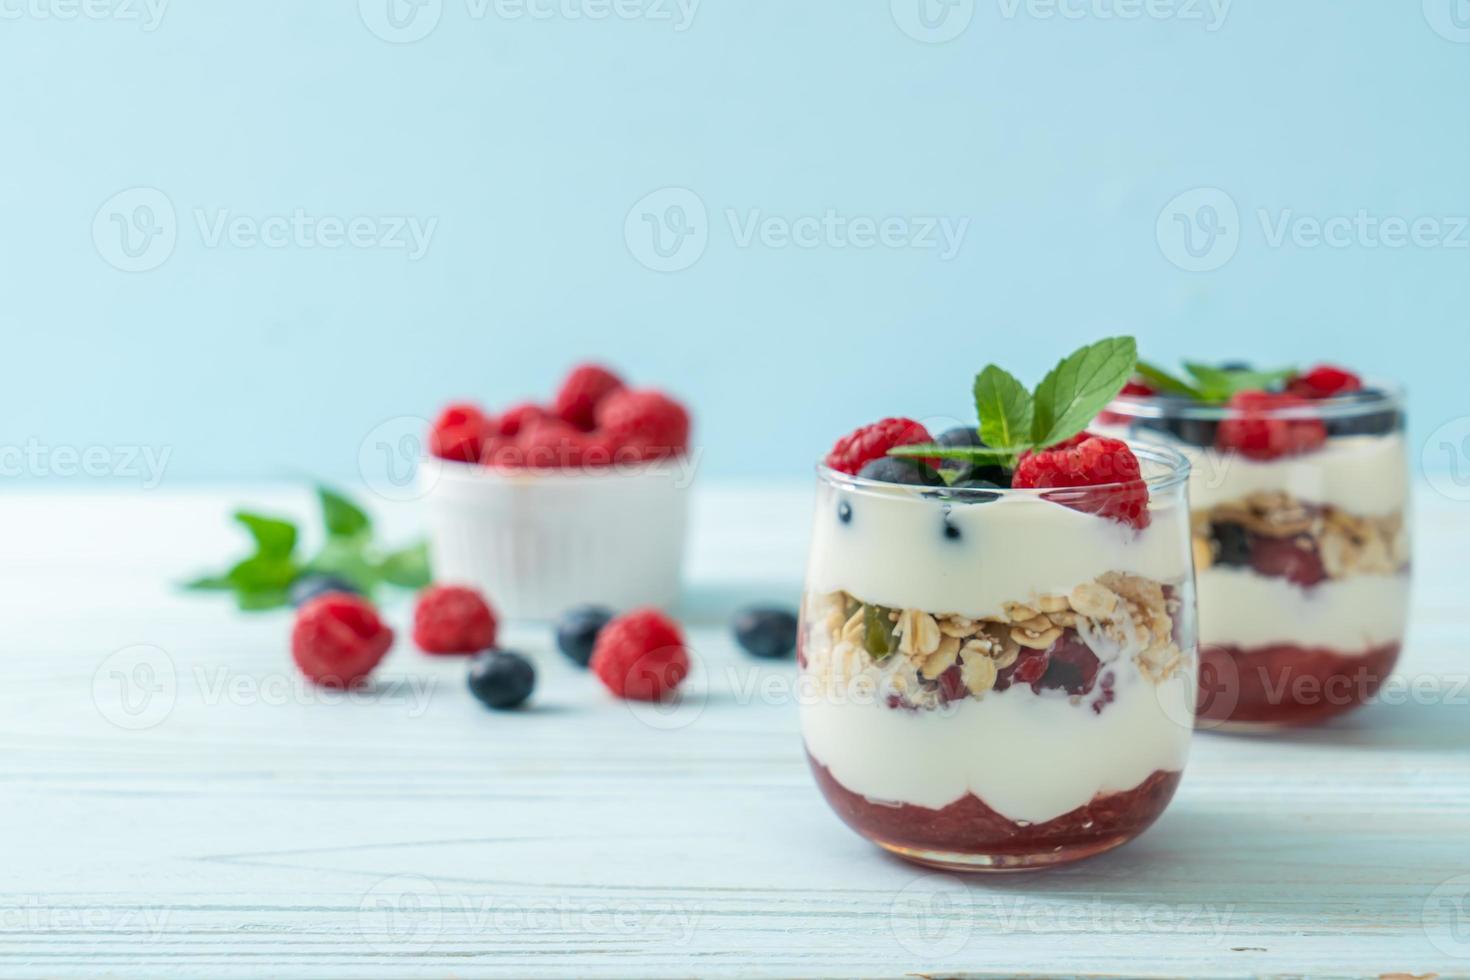 framboise et myrtille maison avec yaourt et granola - style alimentaire sain photo